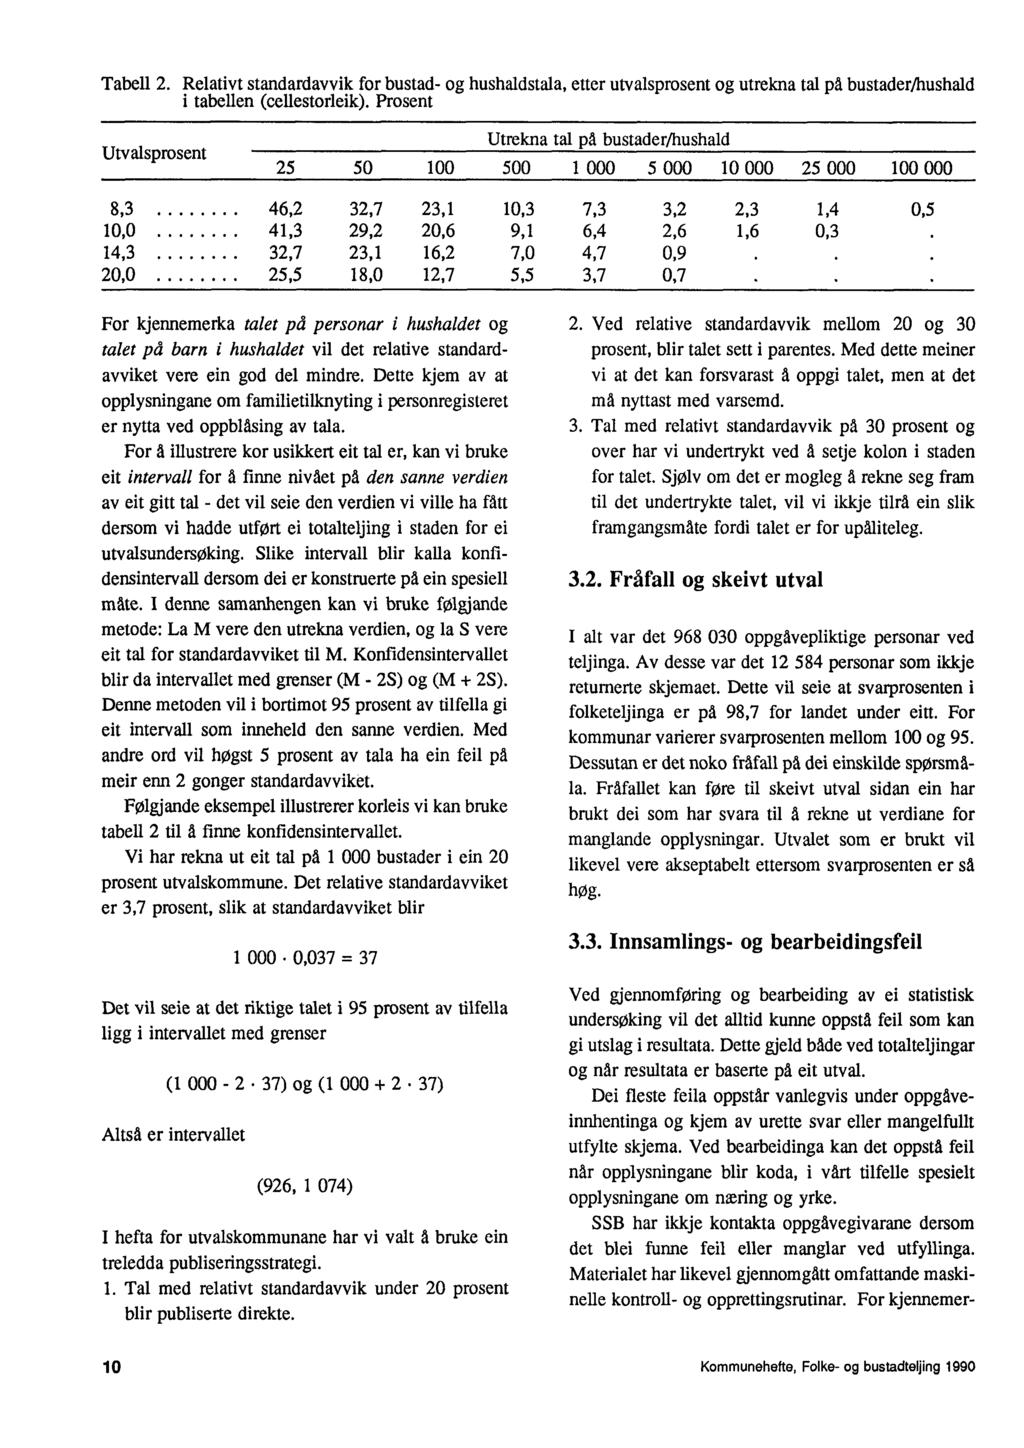 Tabell 2. Relativt standardavvik for bustad- og hushaldstala, etter utvalsprosent og utrekna tal på bustader/hushald tabellen (cellestorleik).